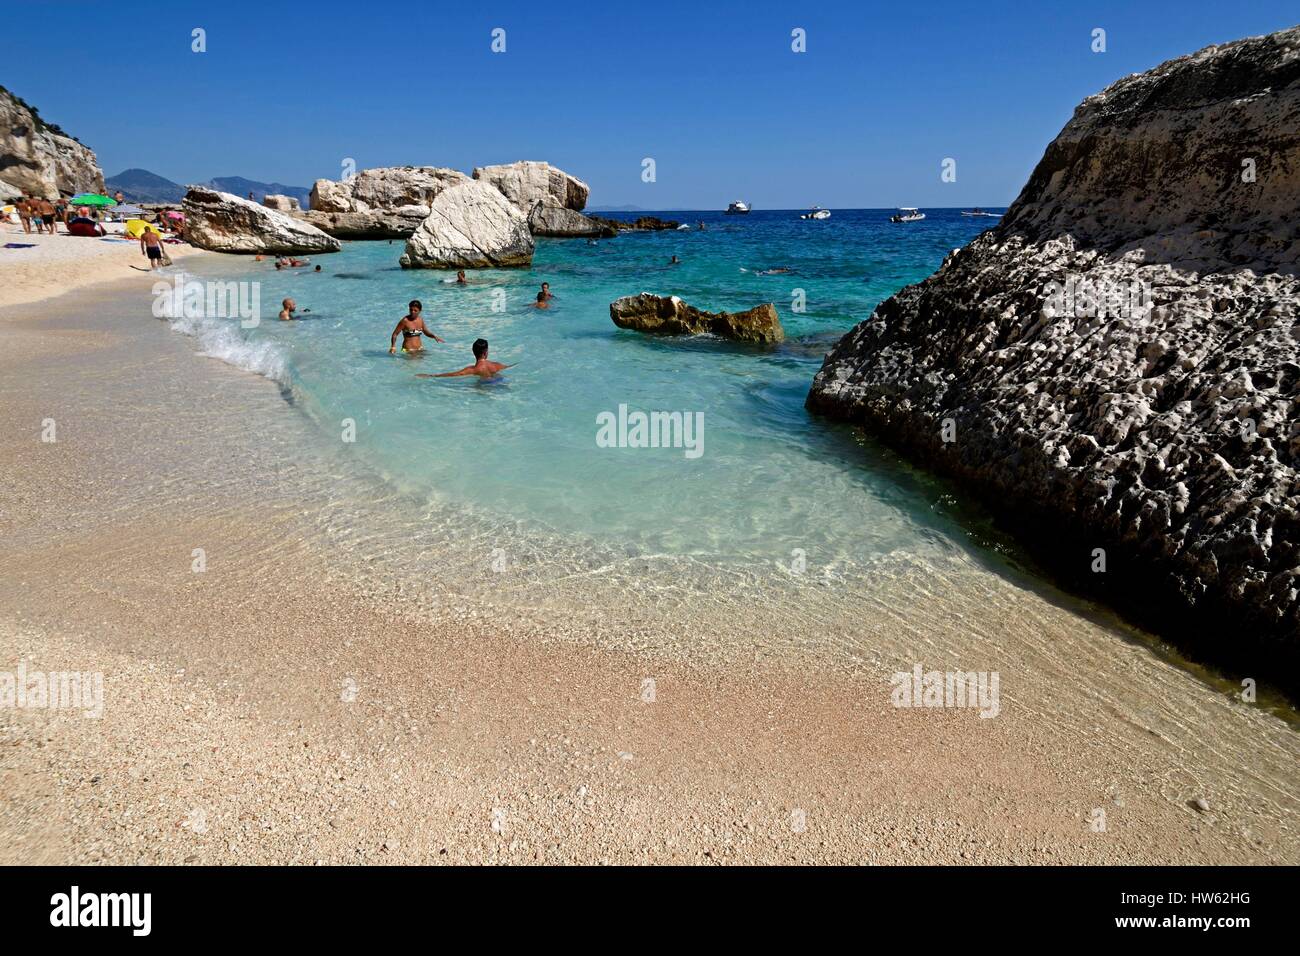 Italien, Sardinien, Tyrrhenischen Meer, Golf von Orosei, Nationalpark Gennargentu, wilden Bucht und weißer Sandstrand, Touristen am Strand Stockfoto